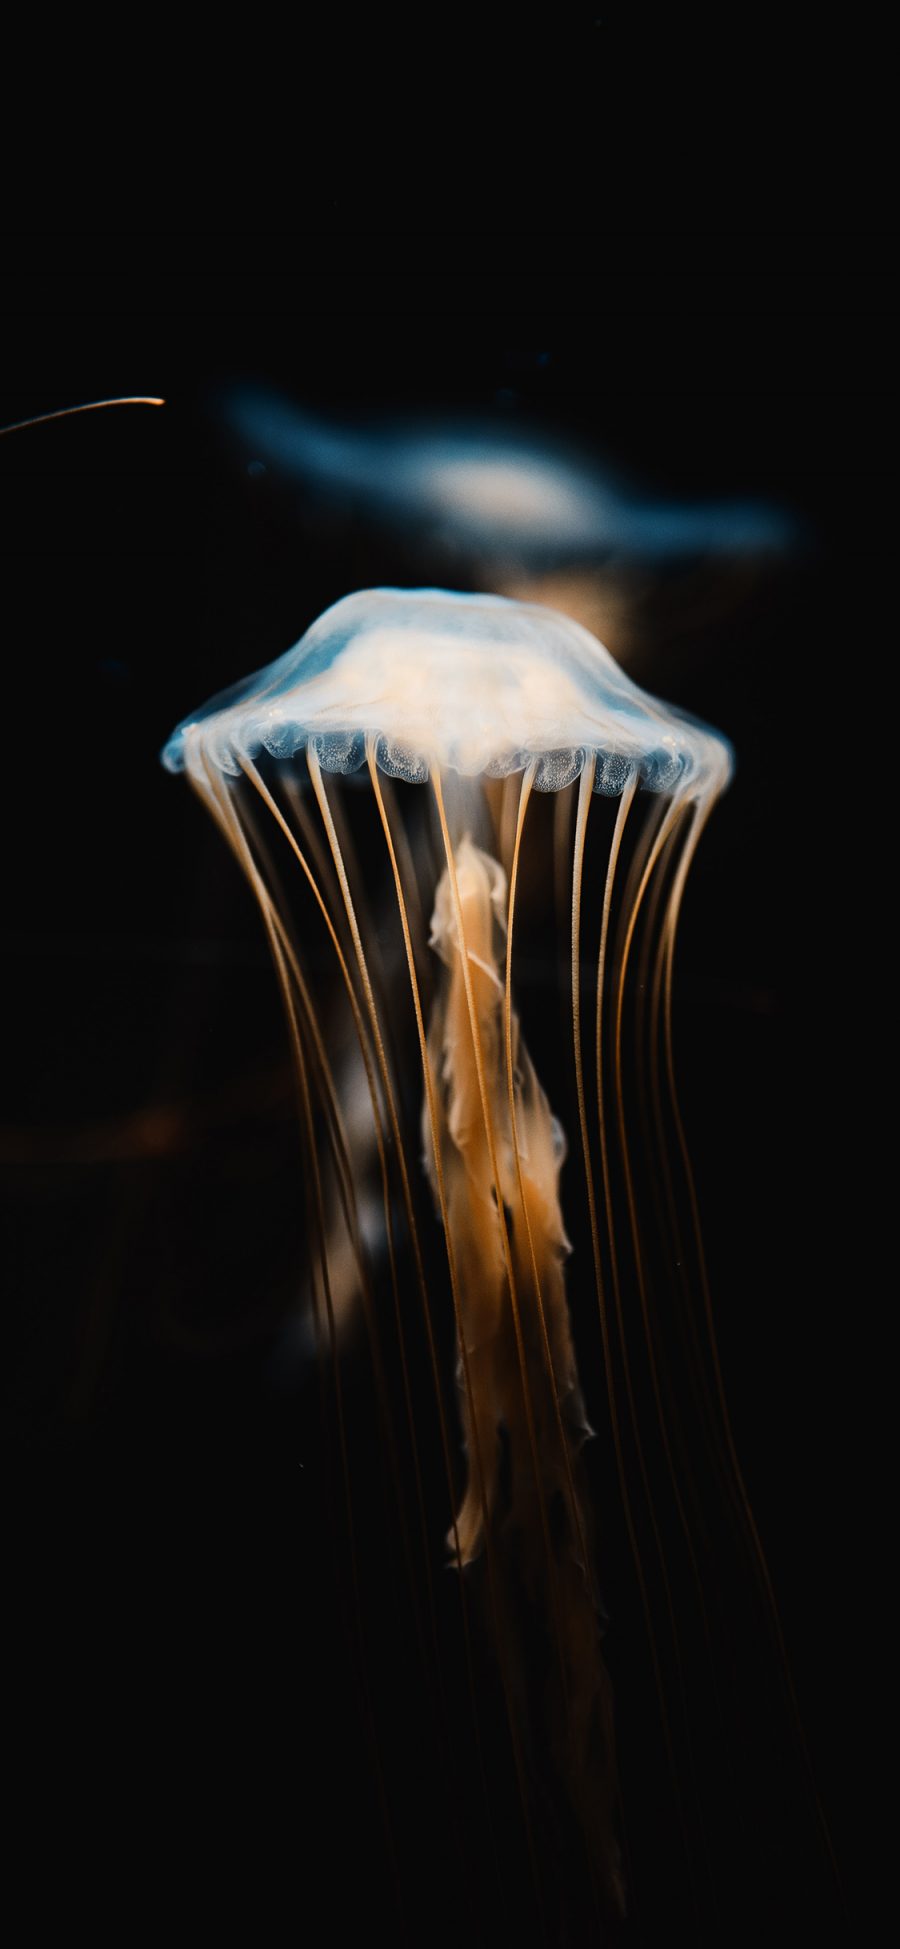 [2436×1125]海洋生物 水母 触脚 海蜇 苹果手机壁纸图片